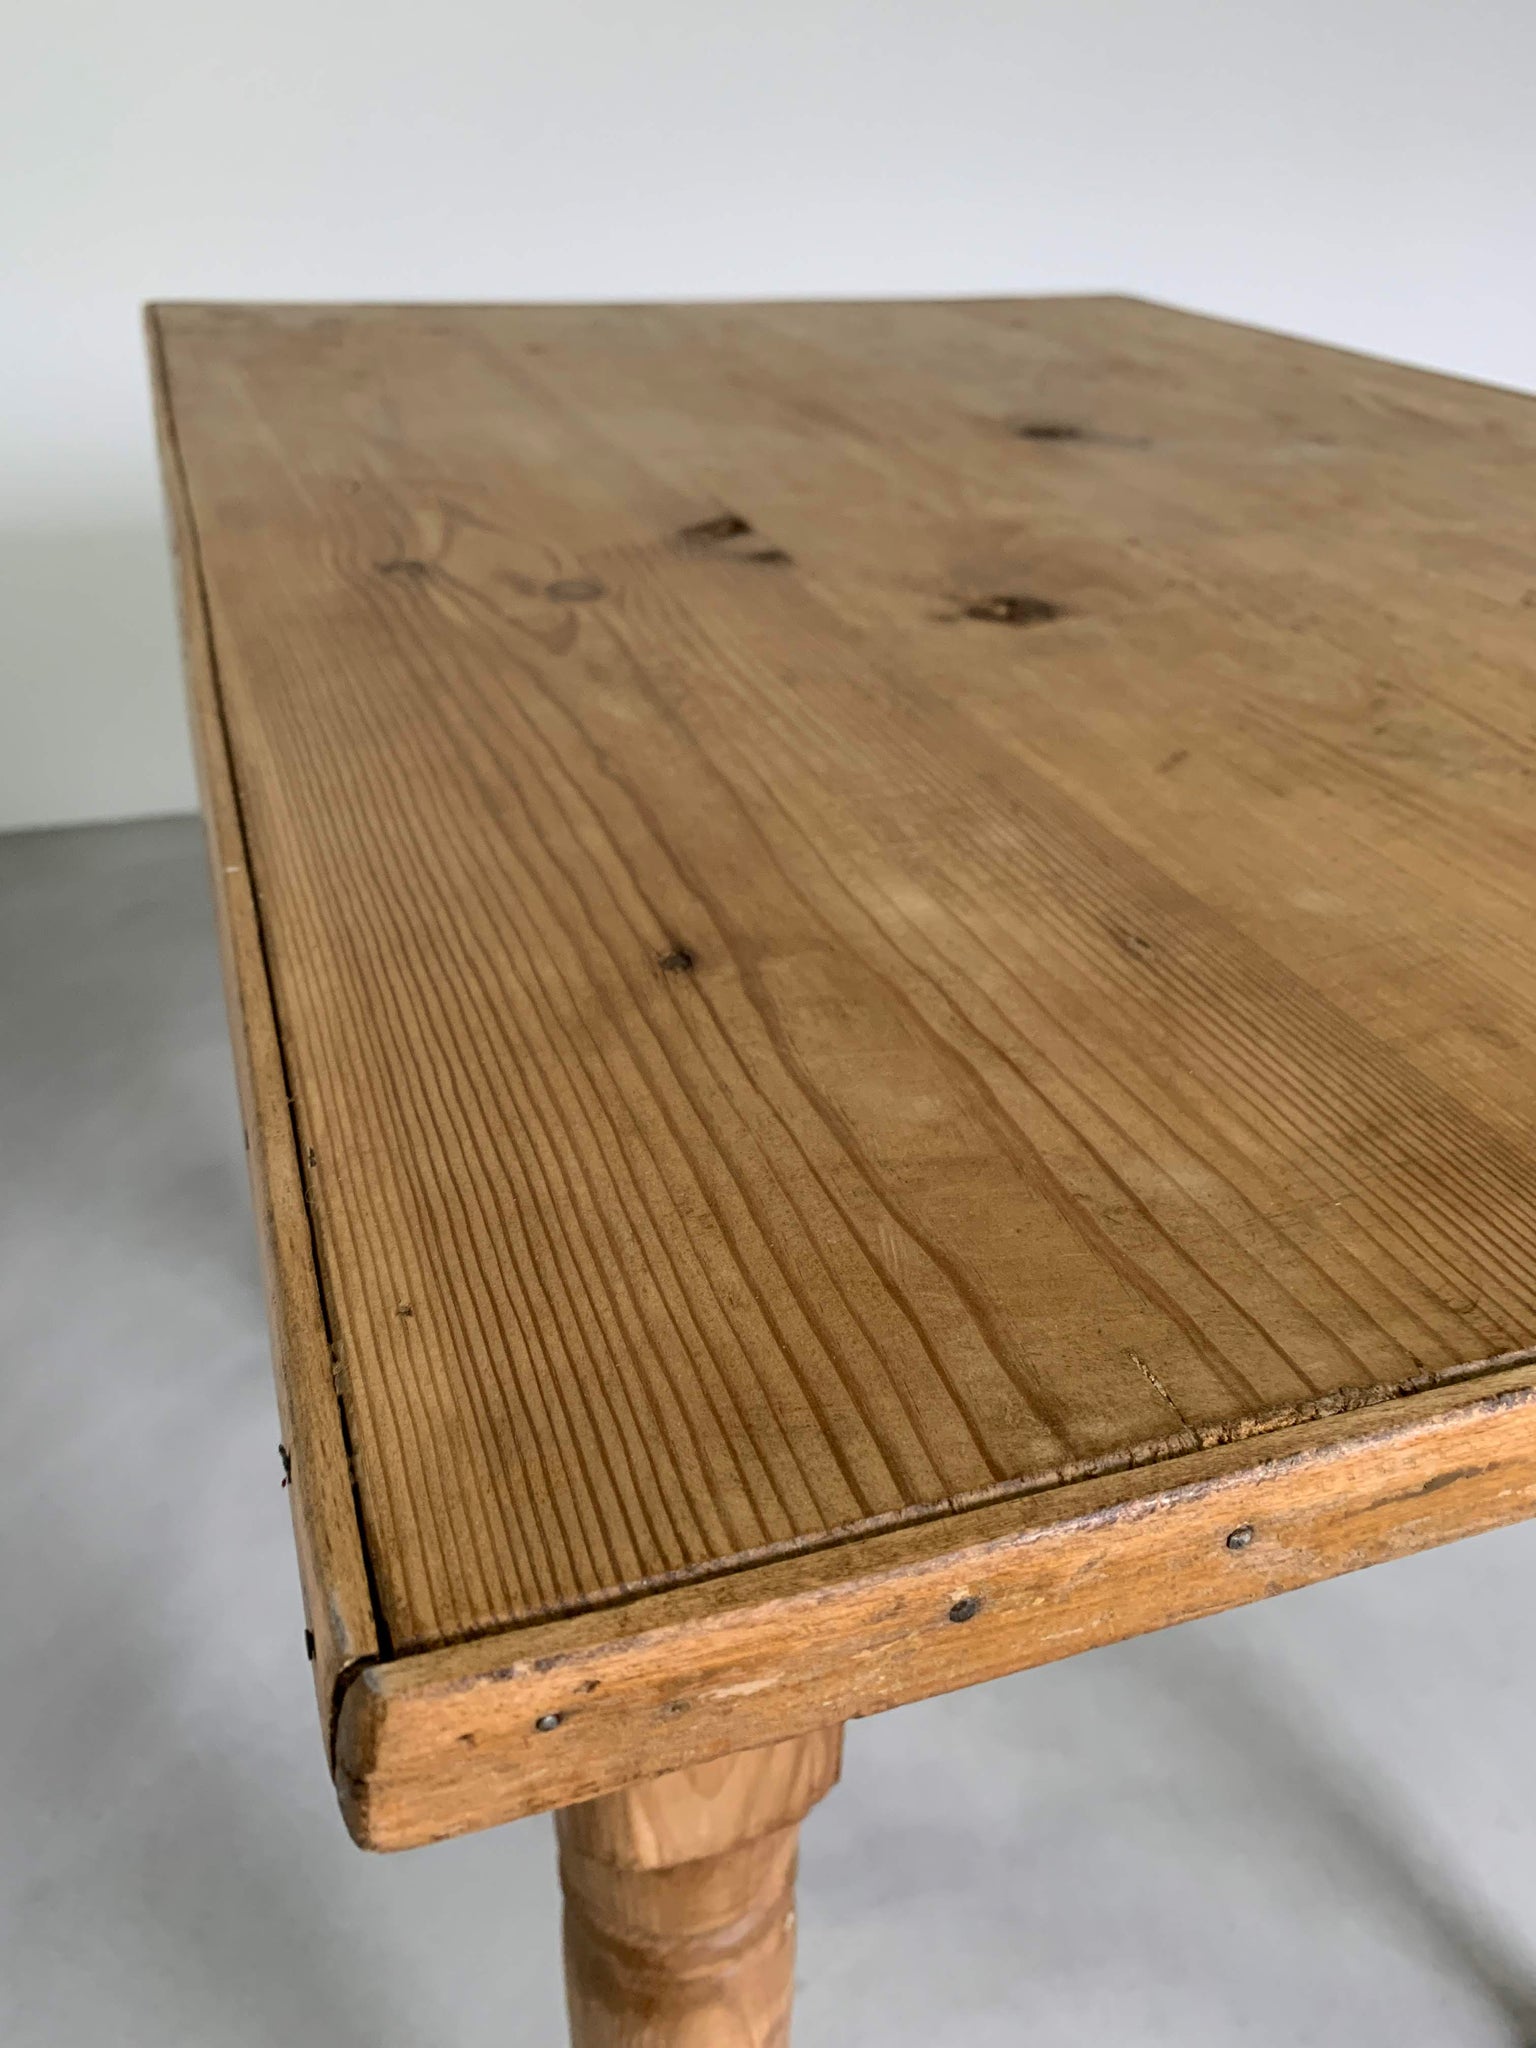 オールドパイン テーブル デスク / old pine table desk #0081